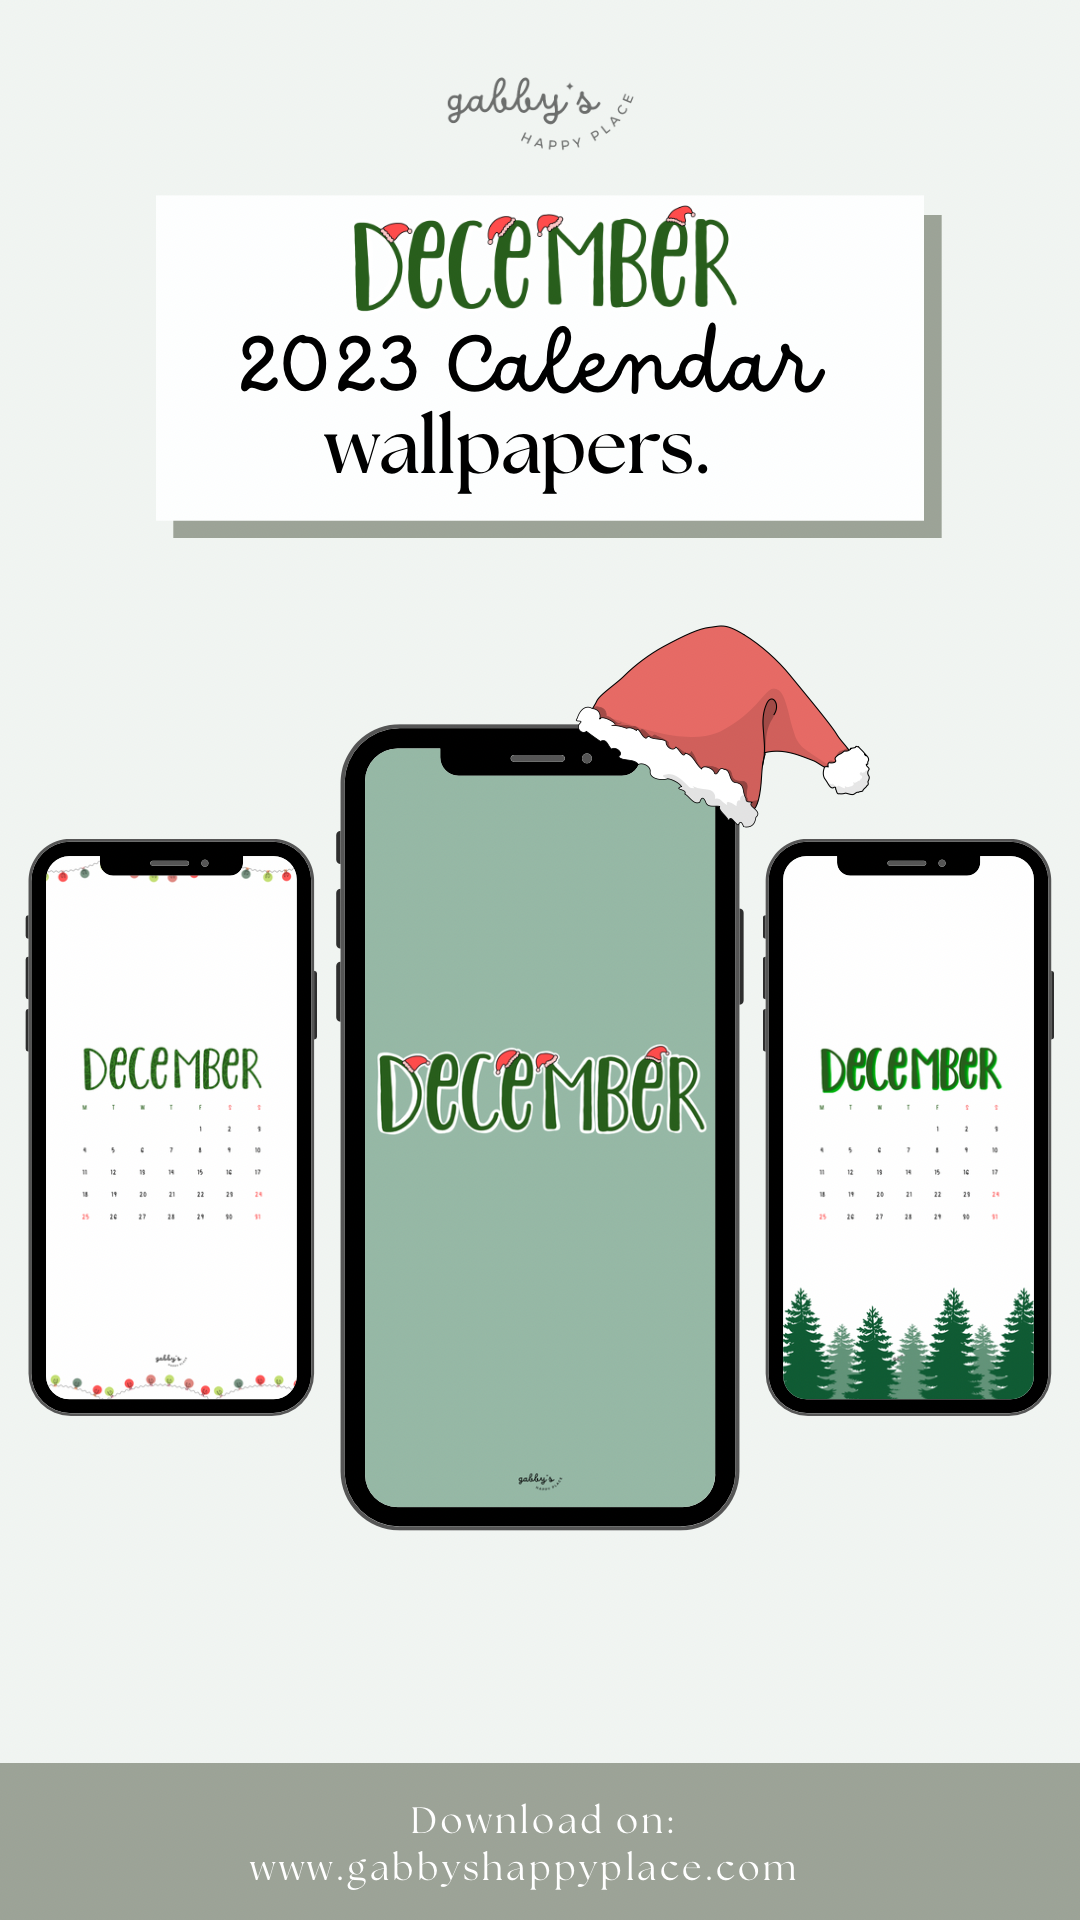 December 2023 calendar wallpapers.